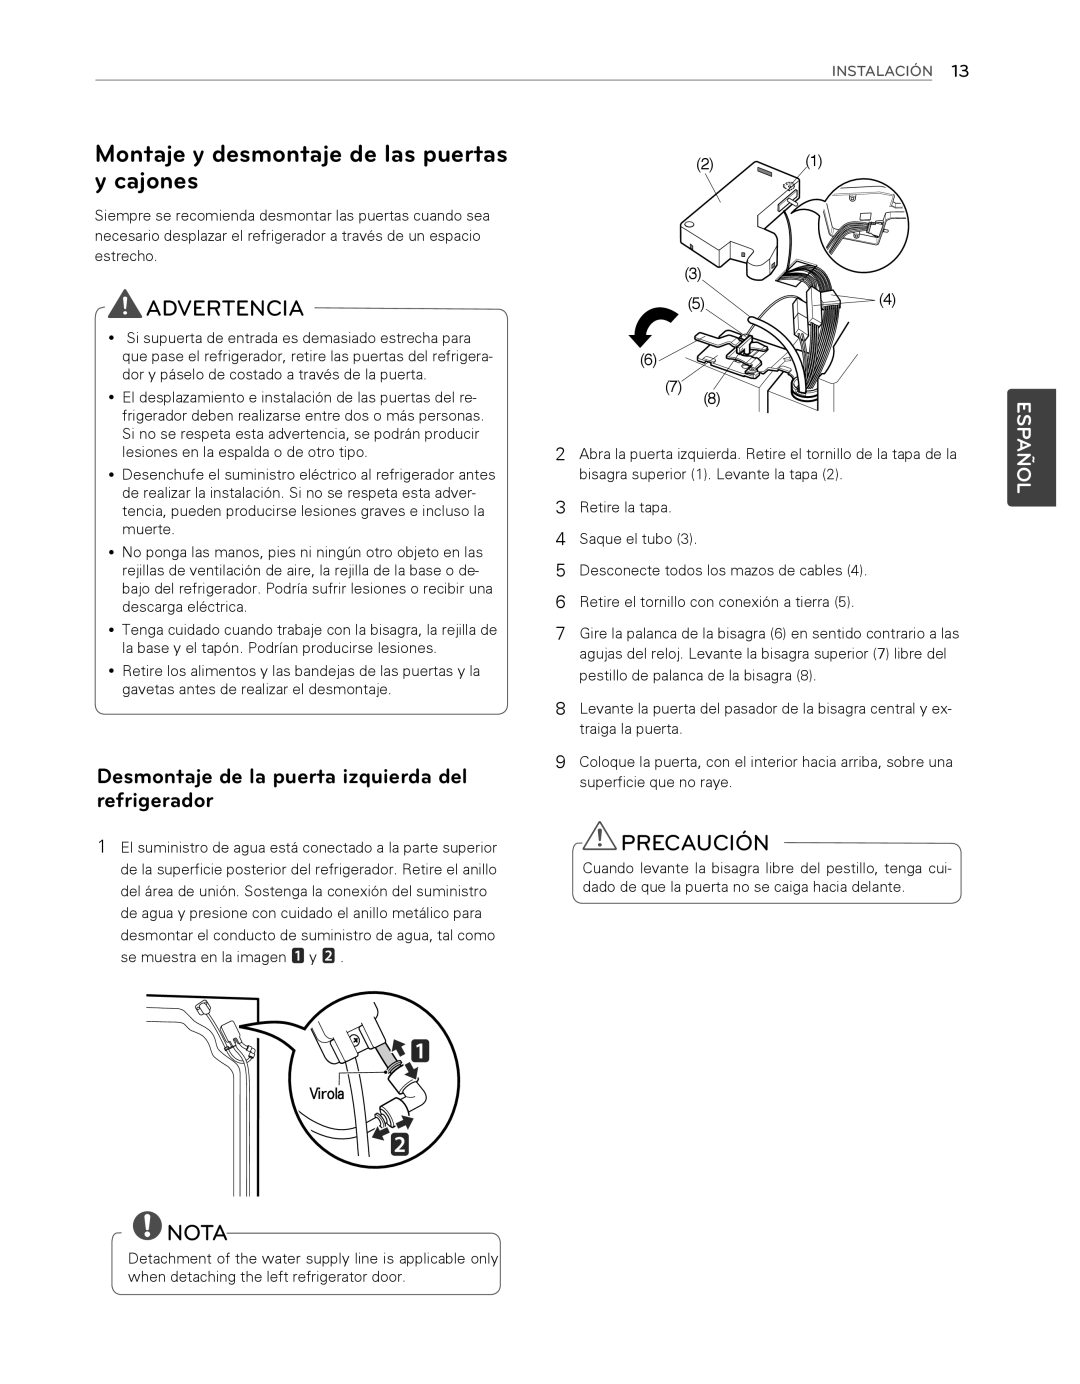 LG Electronics LFX25974ST, LFX25974SB owner manual Advertencia, Precaución, Nota, Español, Instalación, Virola 